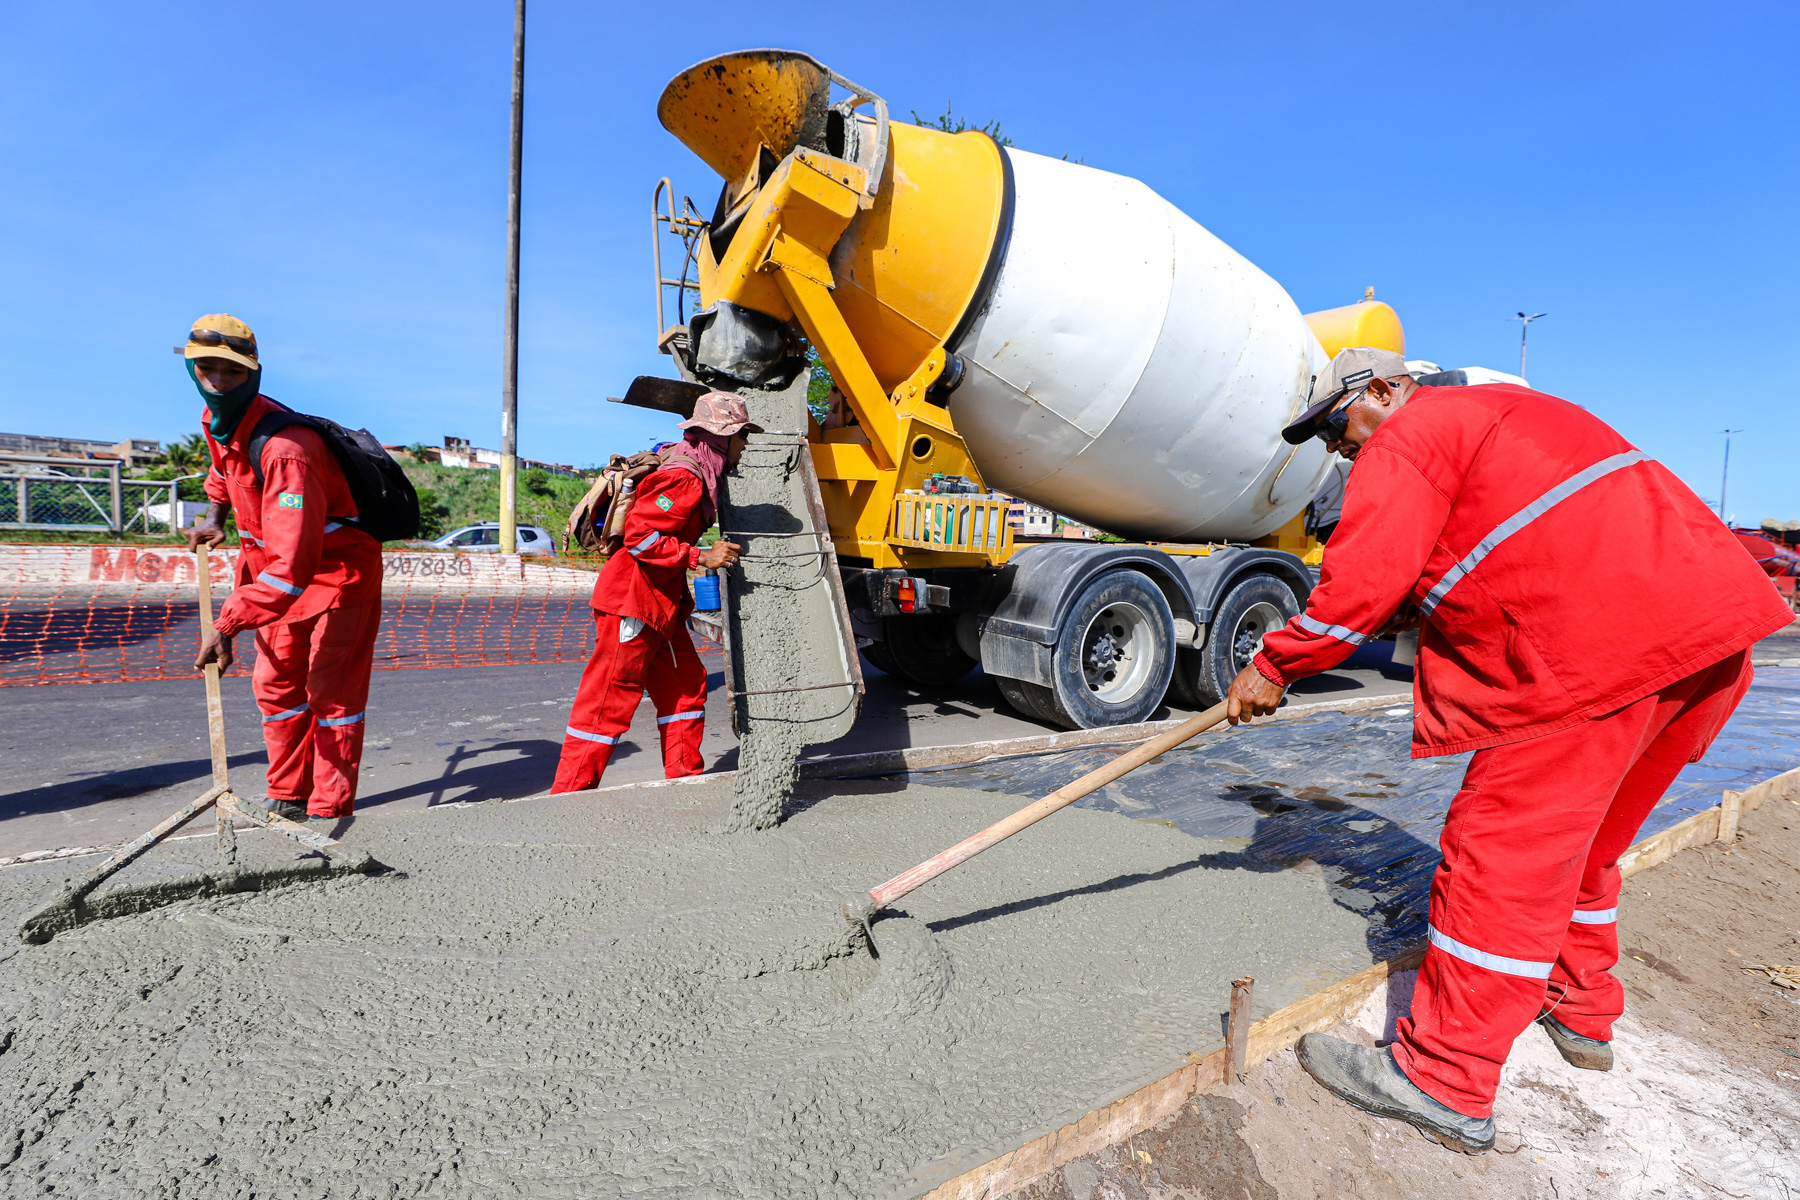 Aracaju Cidade do Futuro: Prefeitura investe R$500 milhões em pacote de obras estruturantes